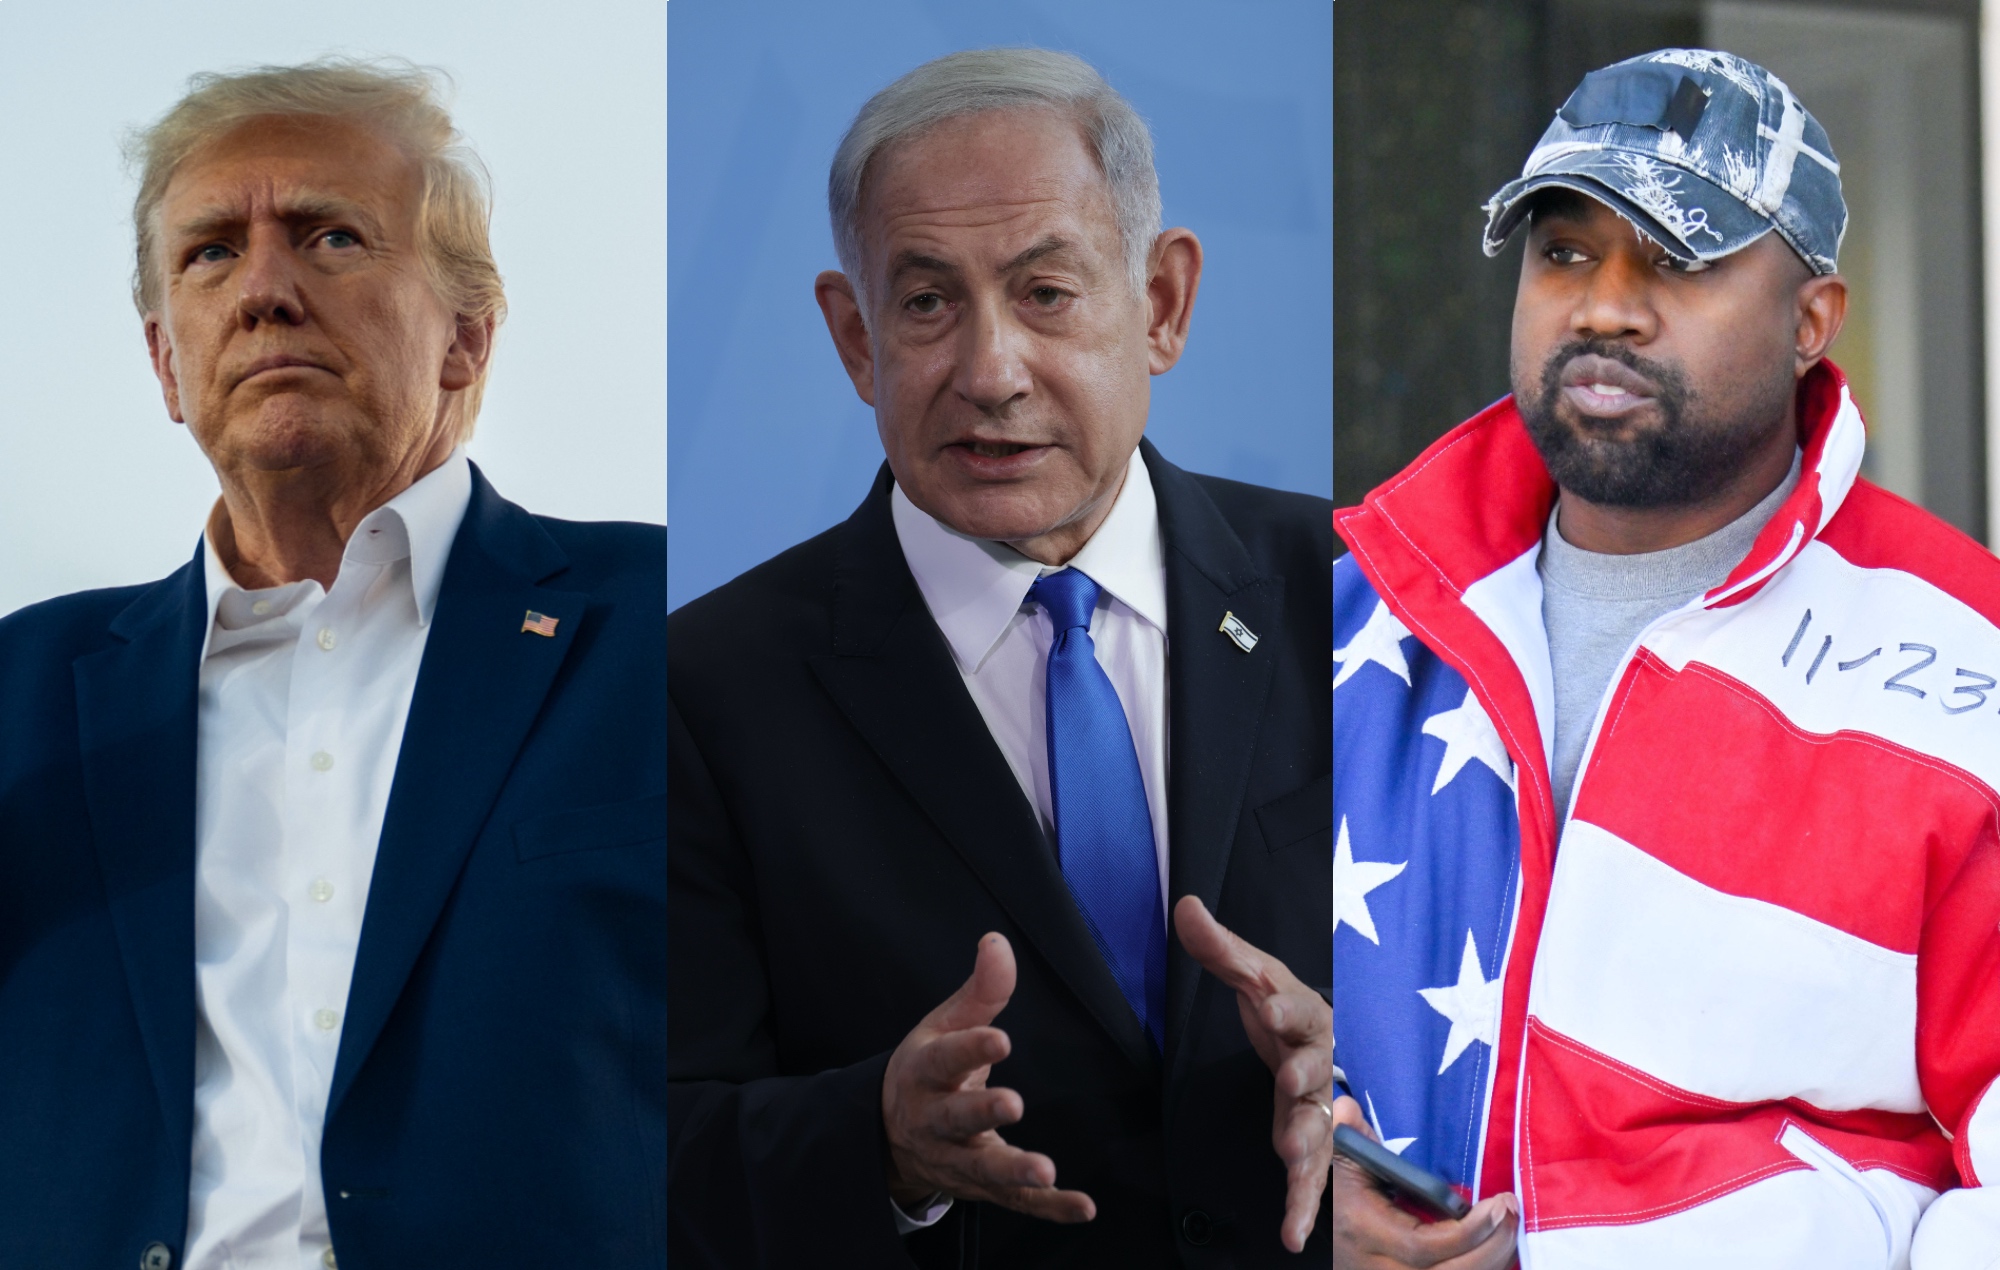 El primer ministro israelí califica de "gran error" la cena de Donald Trump con Kanye West